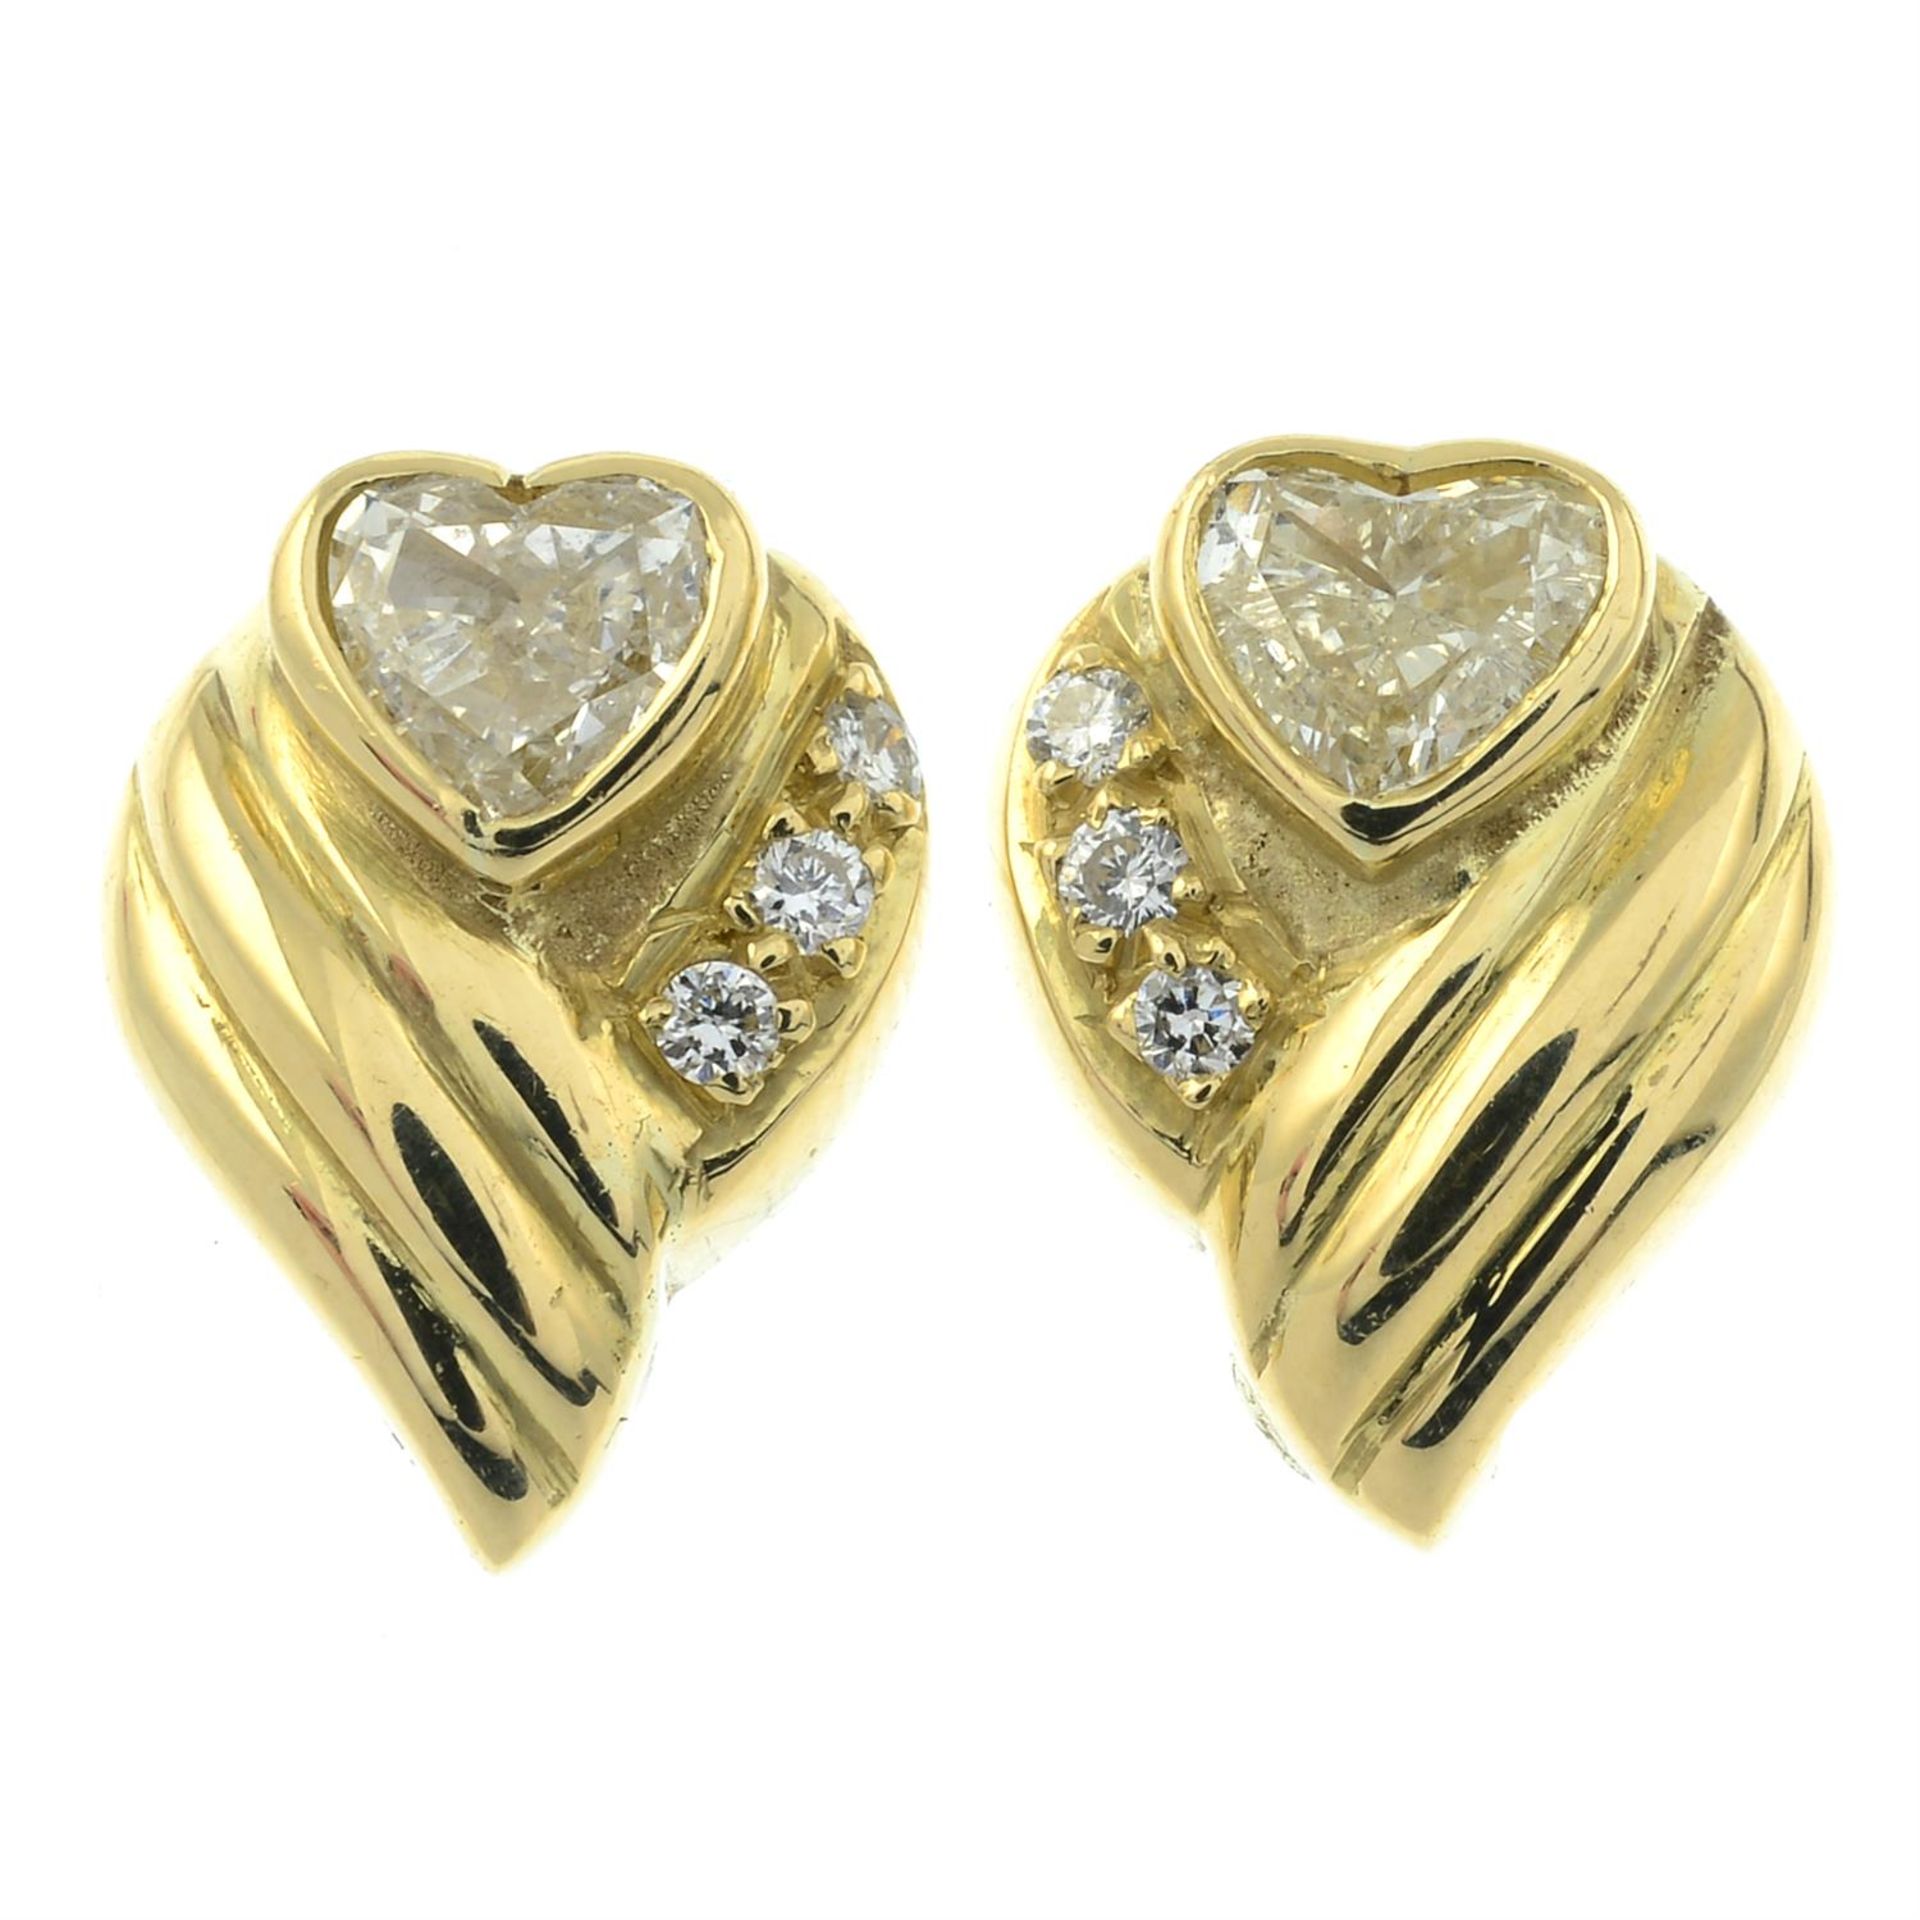 A pair of heart-shape diamond and brilliant-cut diamond earrings.